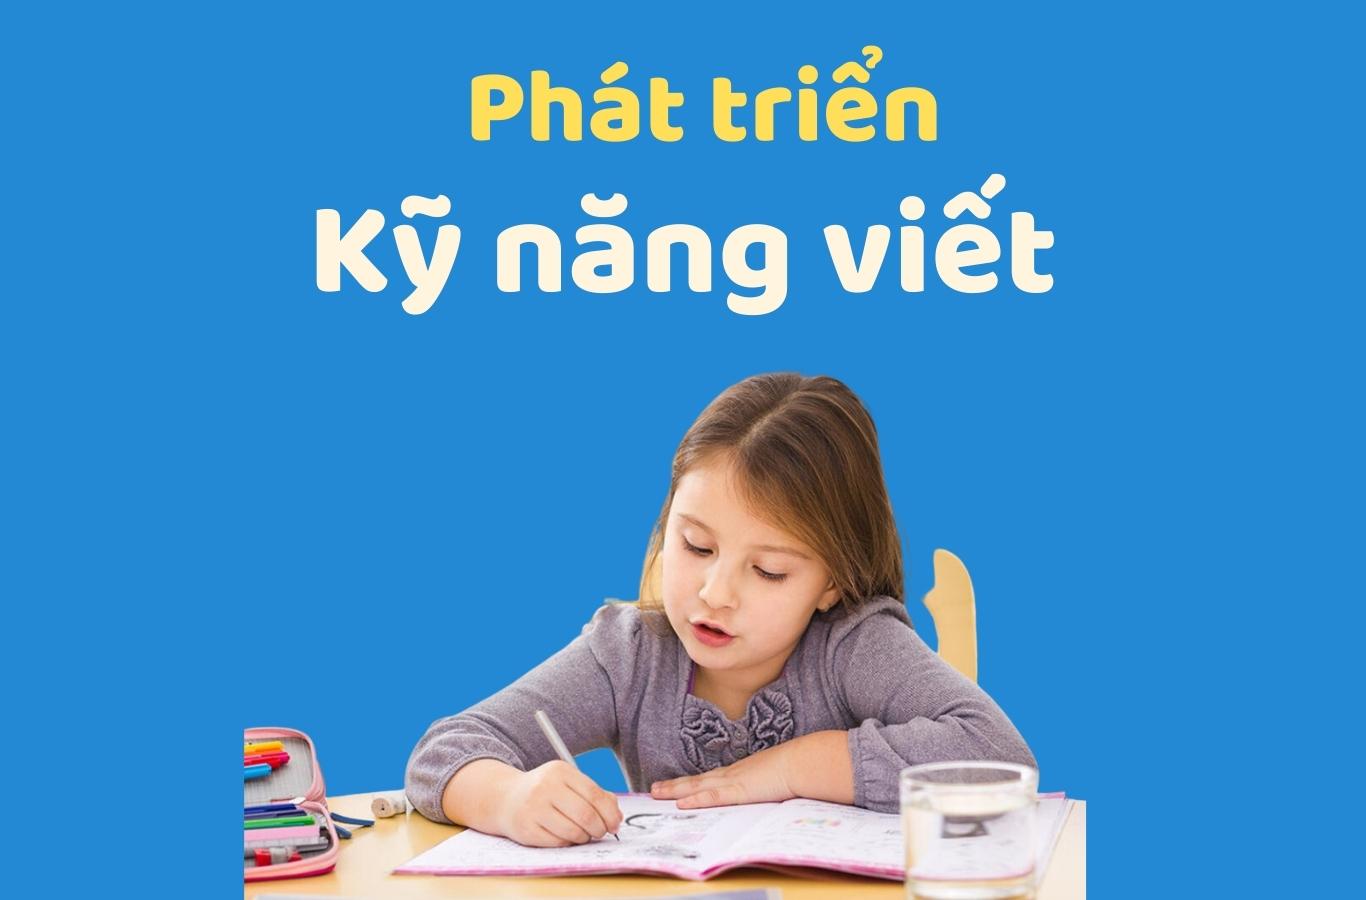 Phát triển kỹ năng viết tiếng Anh dành cho bé